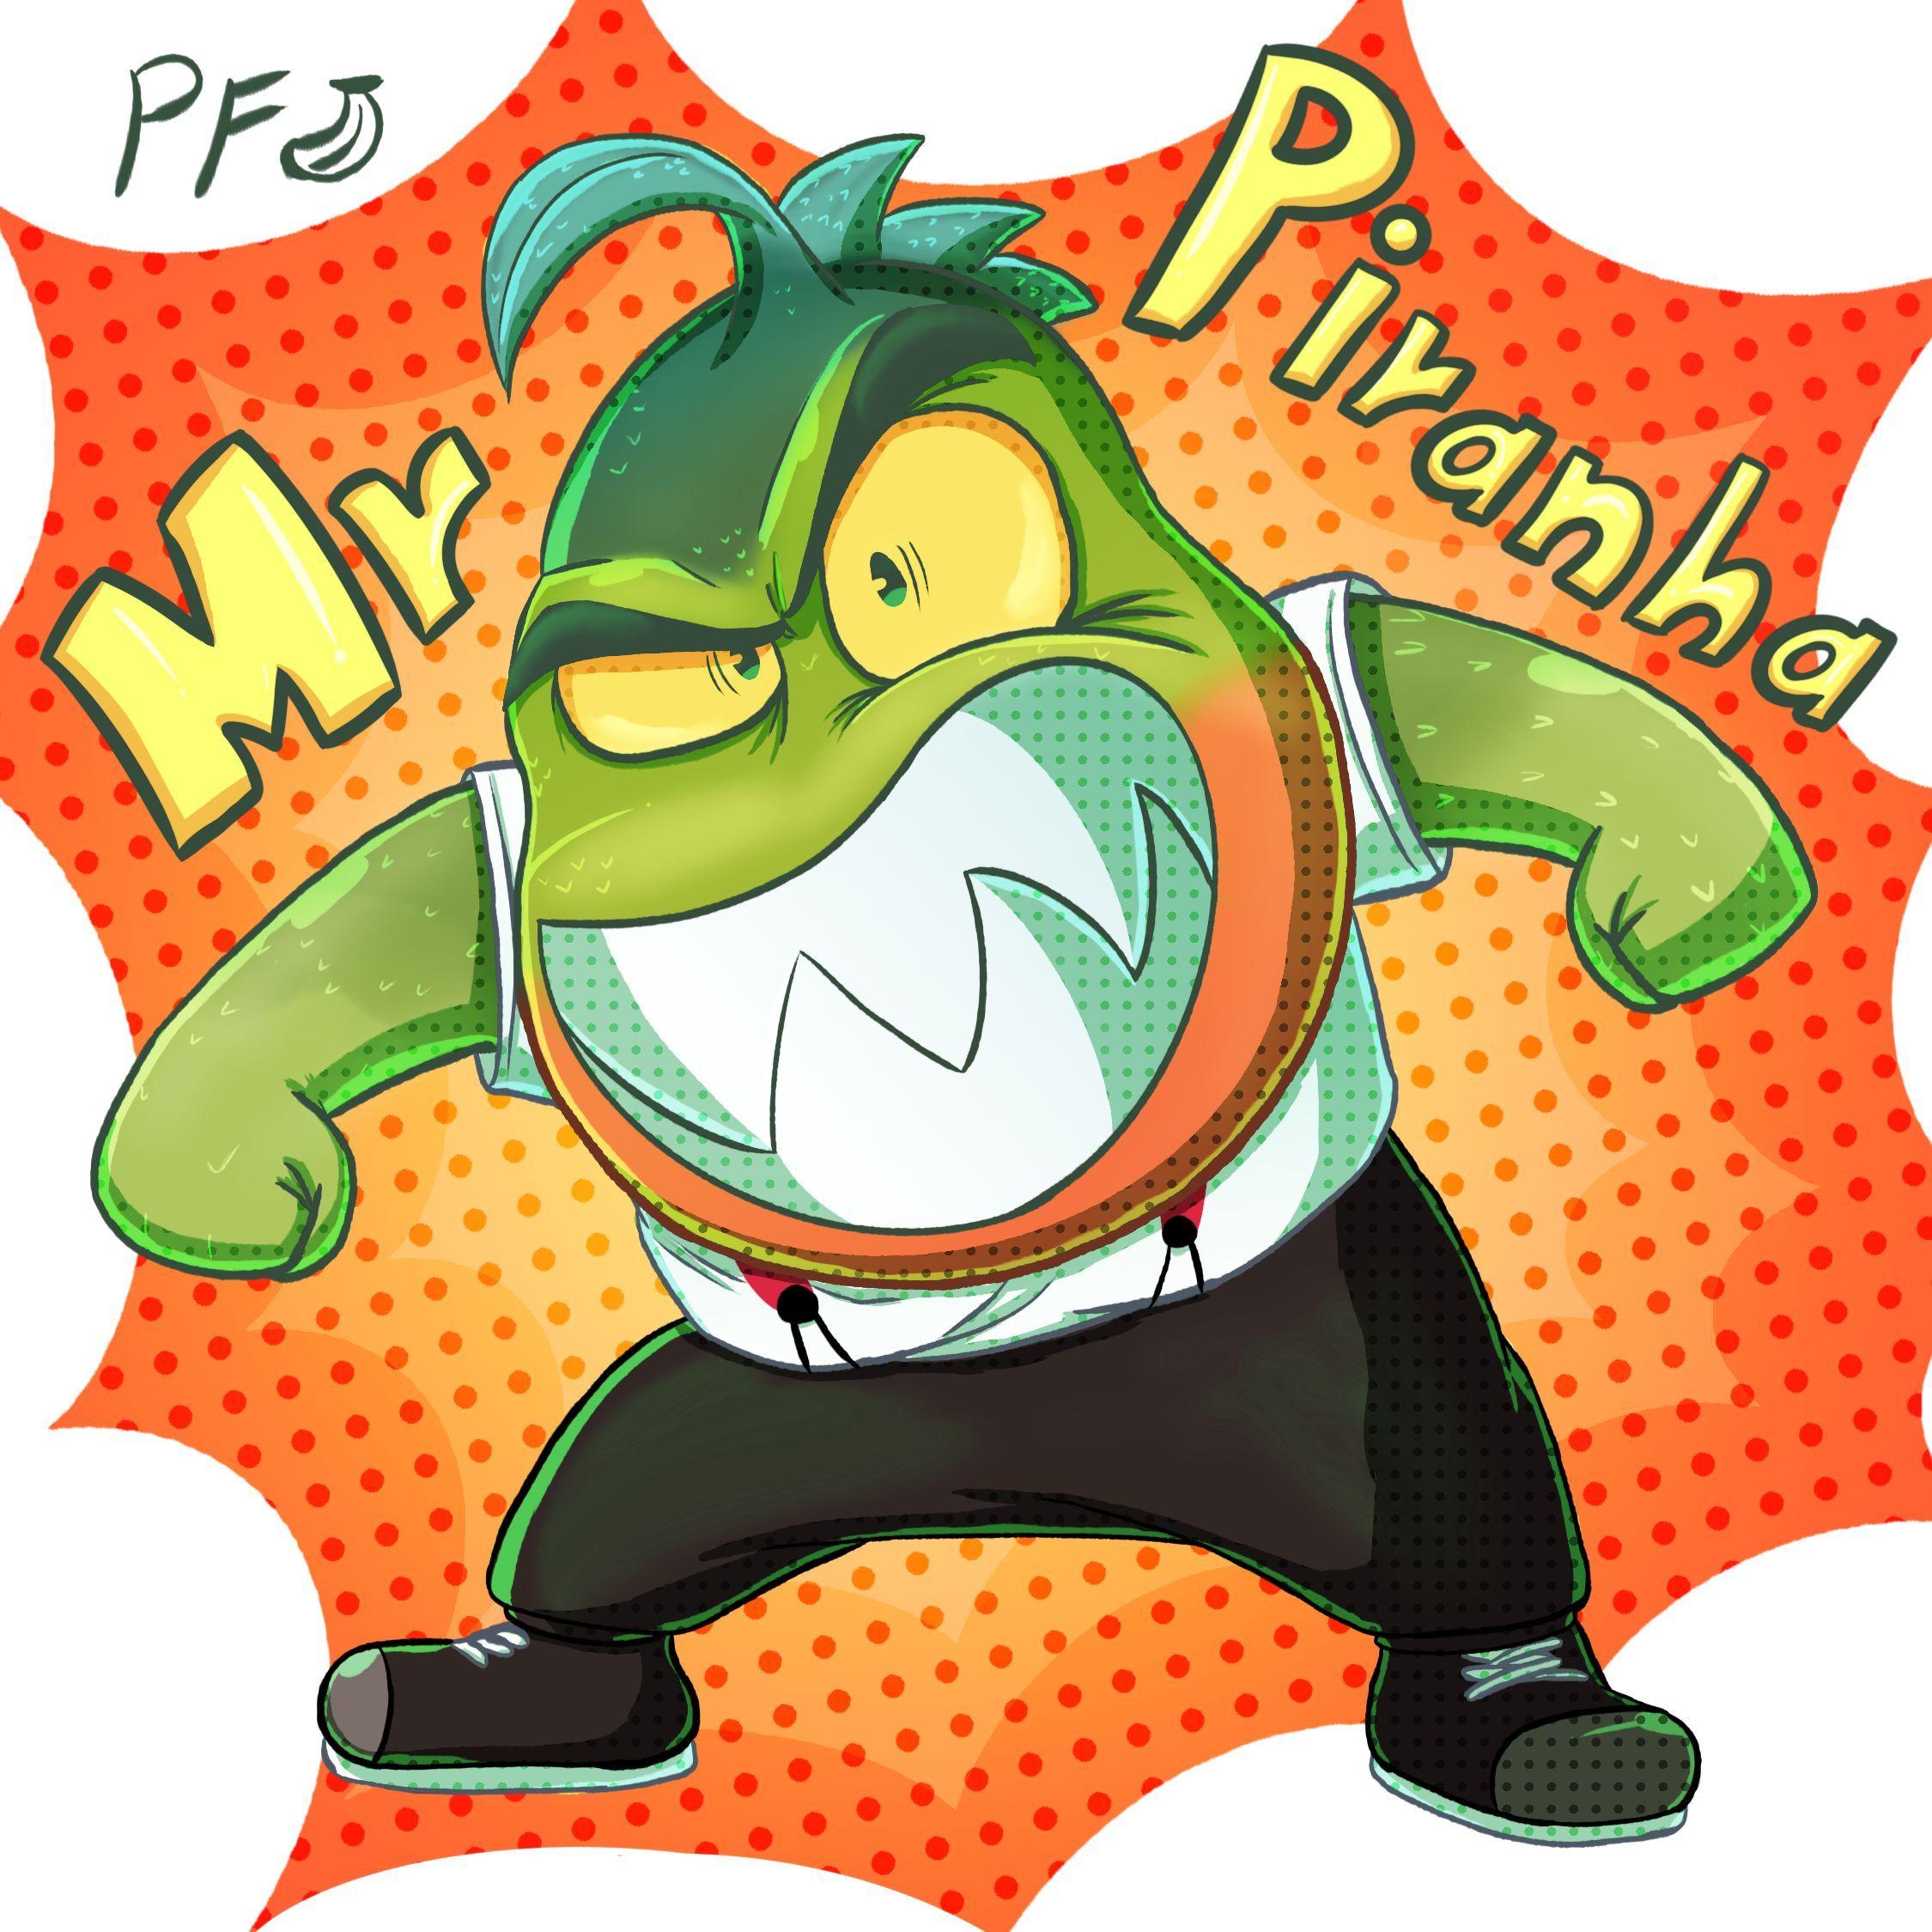 Player PlRANHA2K avatar